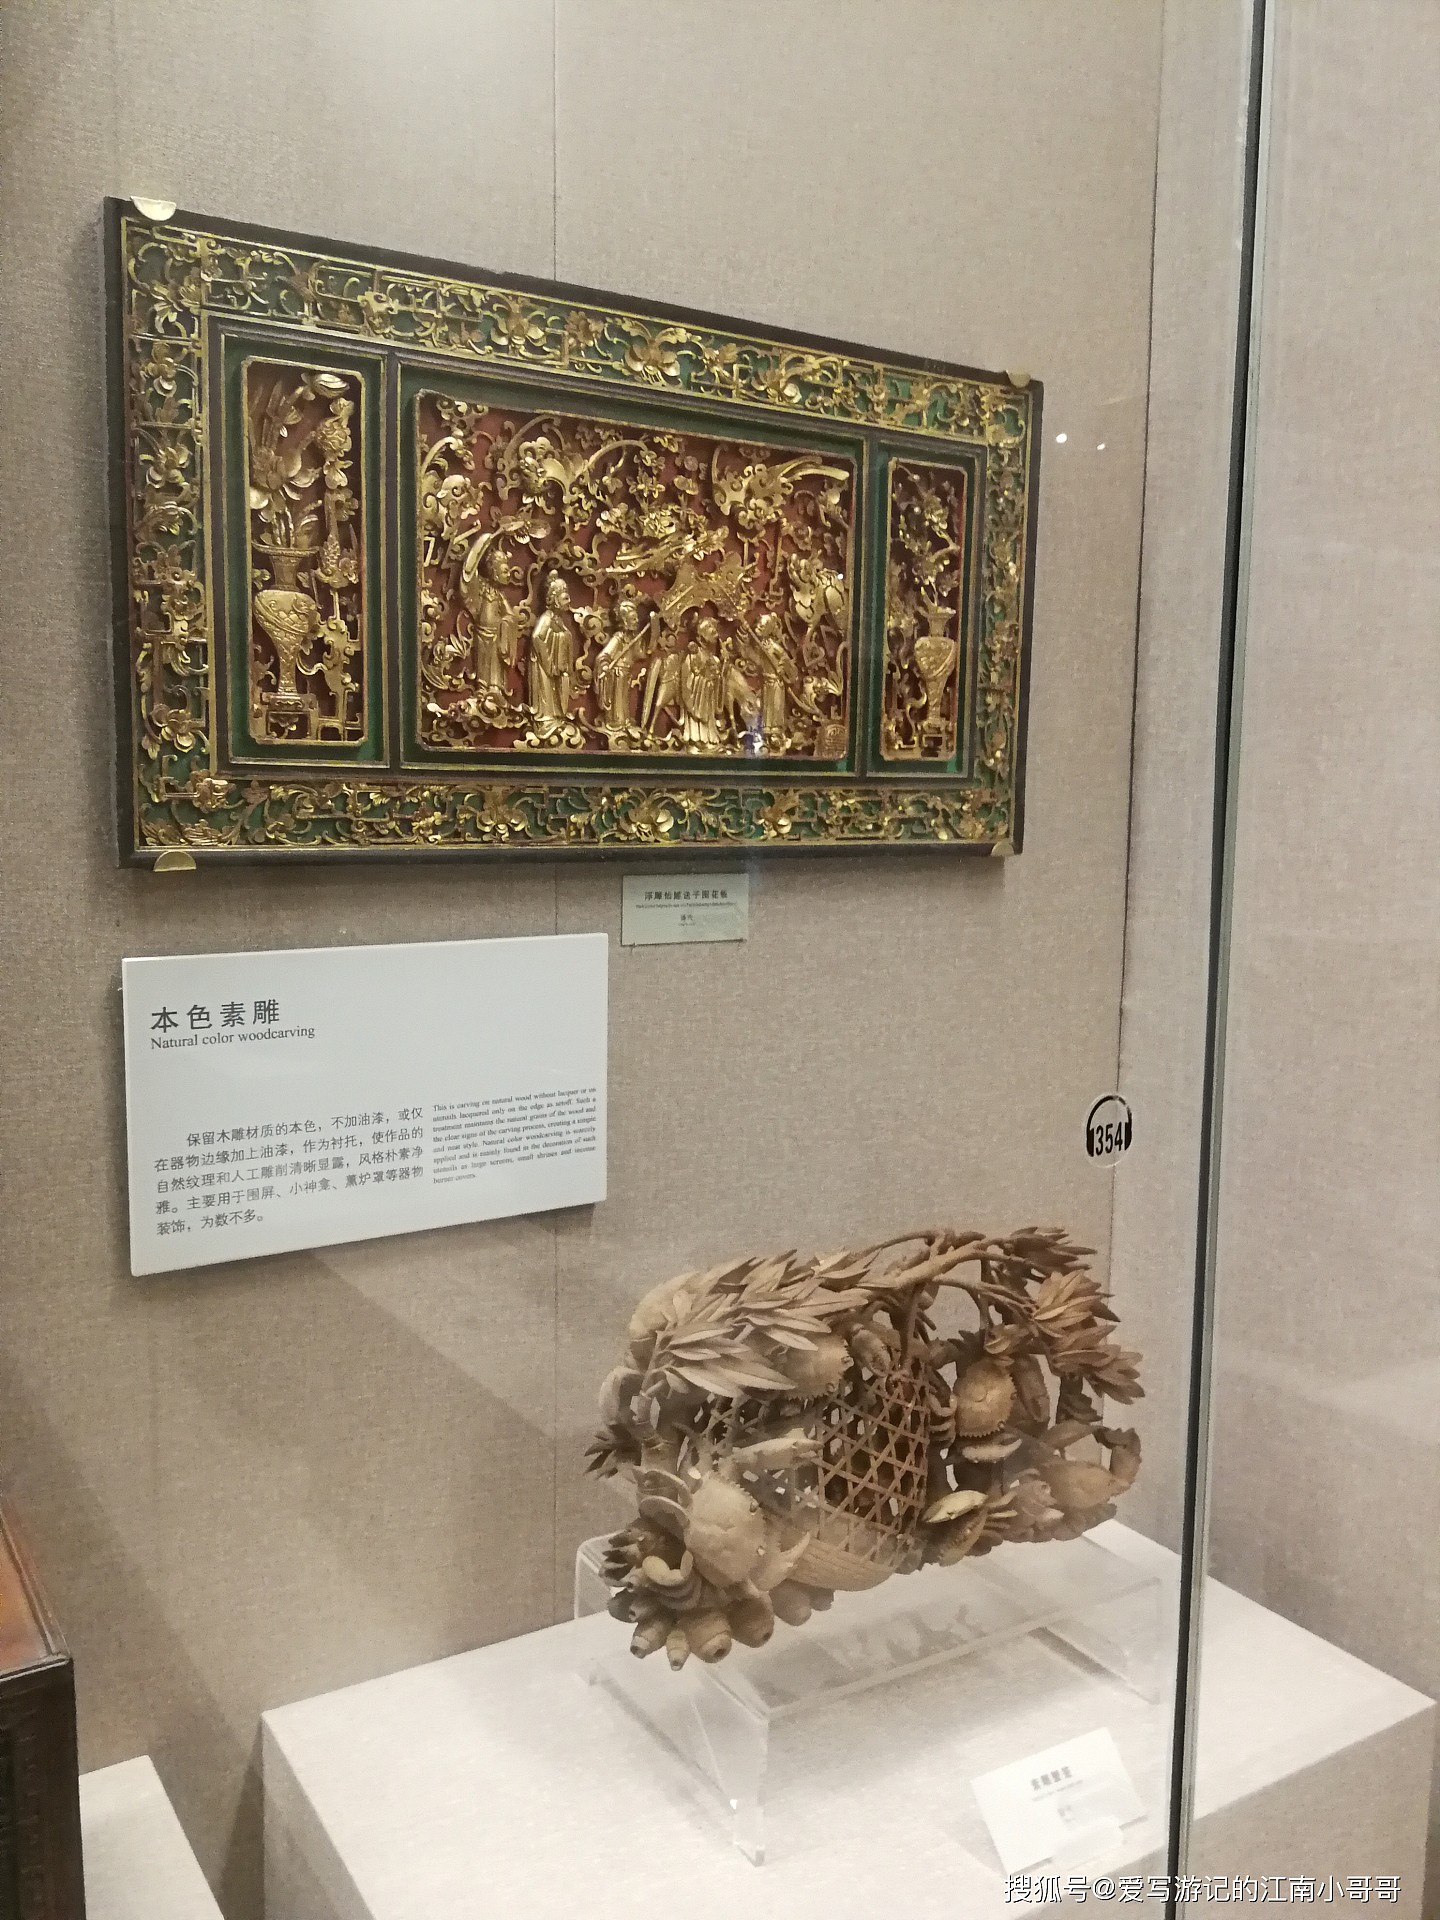 在广博潮州木雕展馆，欣赏木雕制作精湛的工艺技法和丰富的题材 - 19